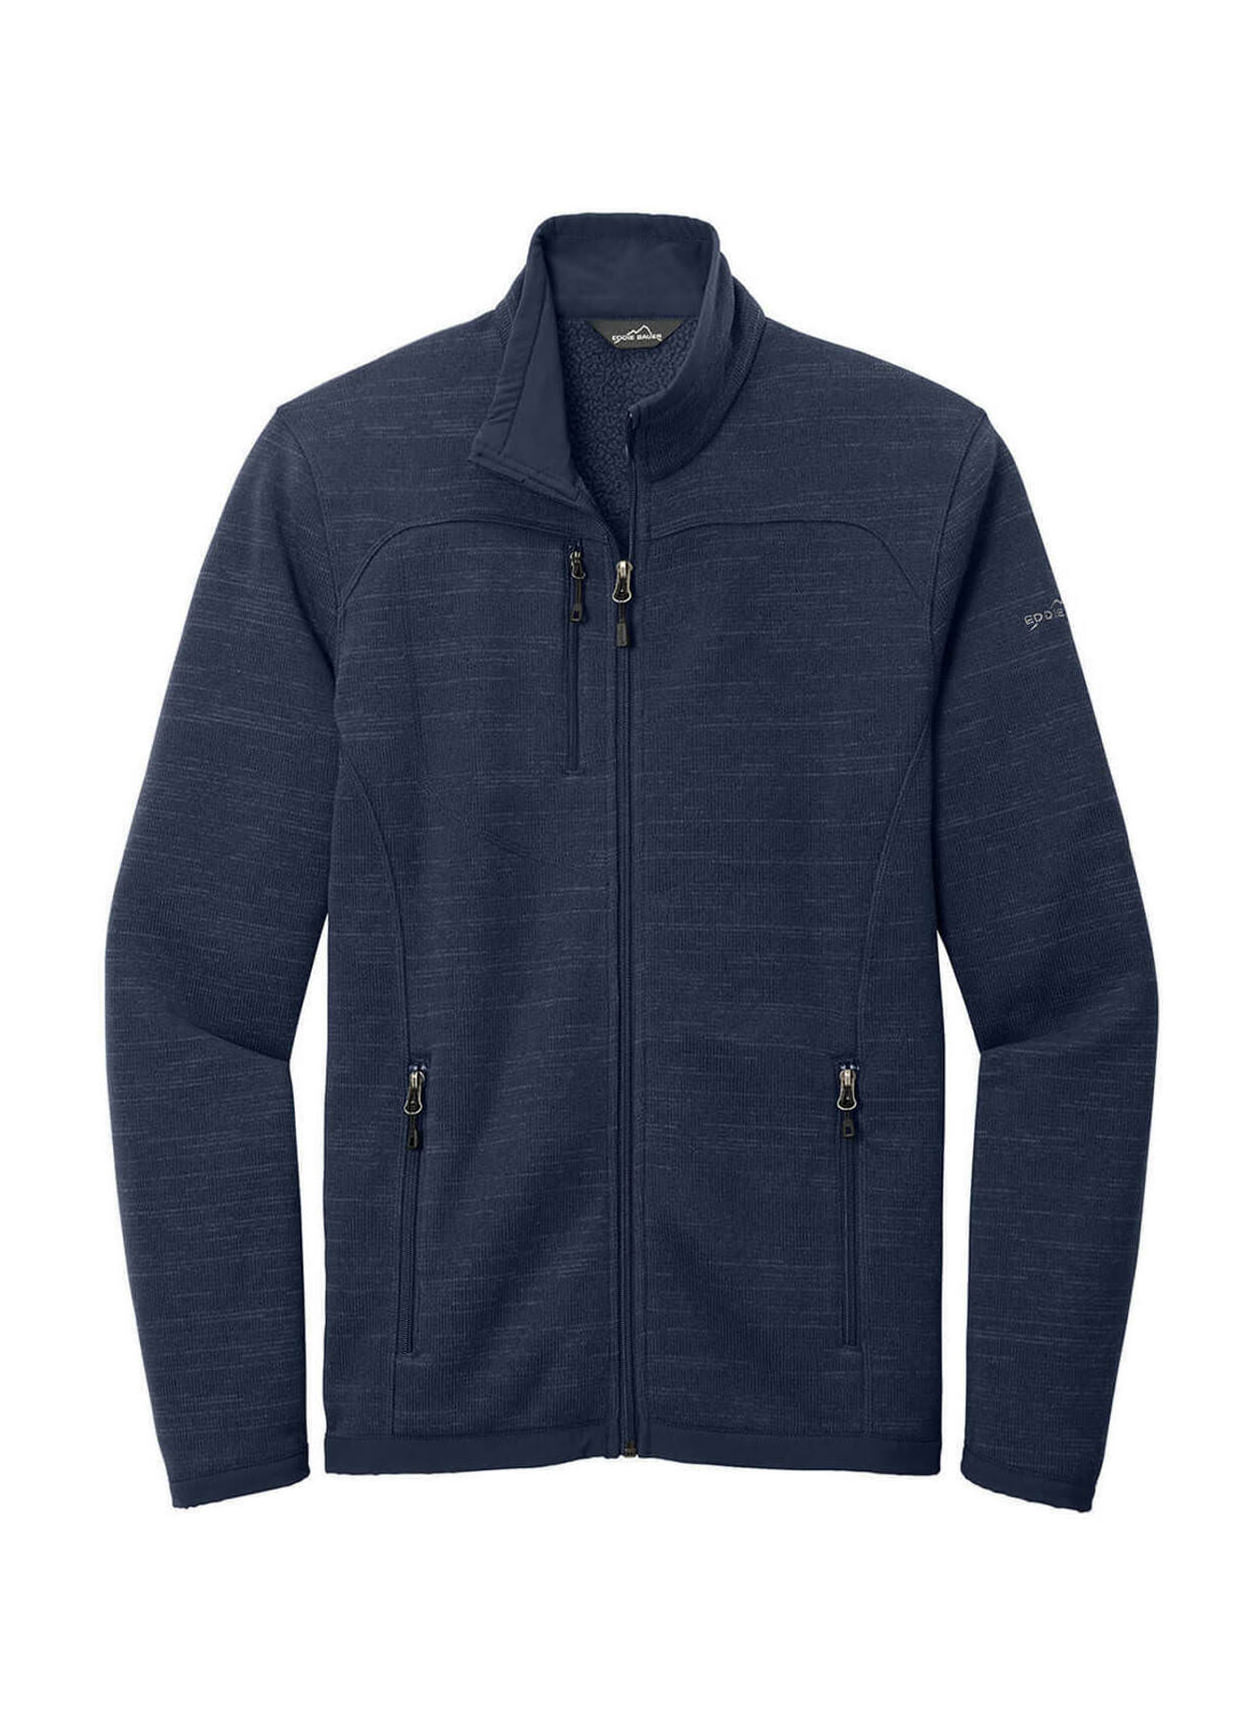 Eddie Bauer Sweater Fleece Jacket Men's River Blue Heather EB250